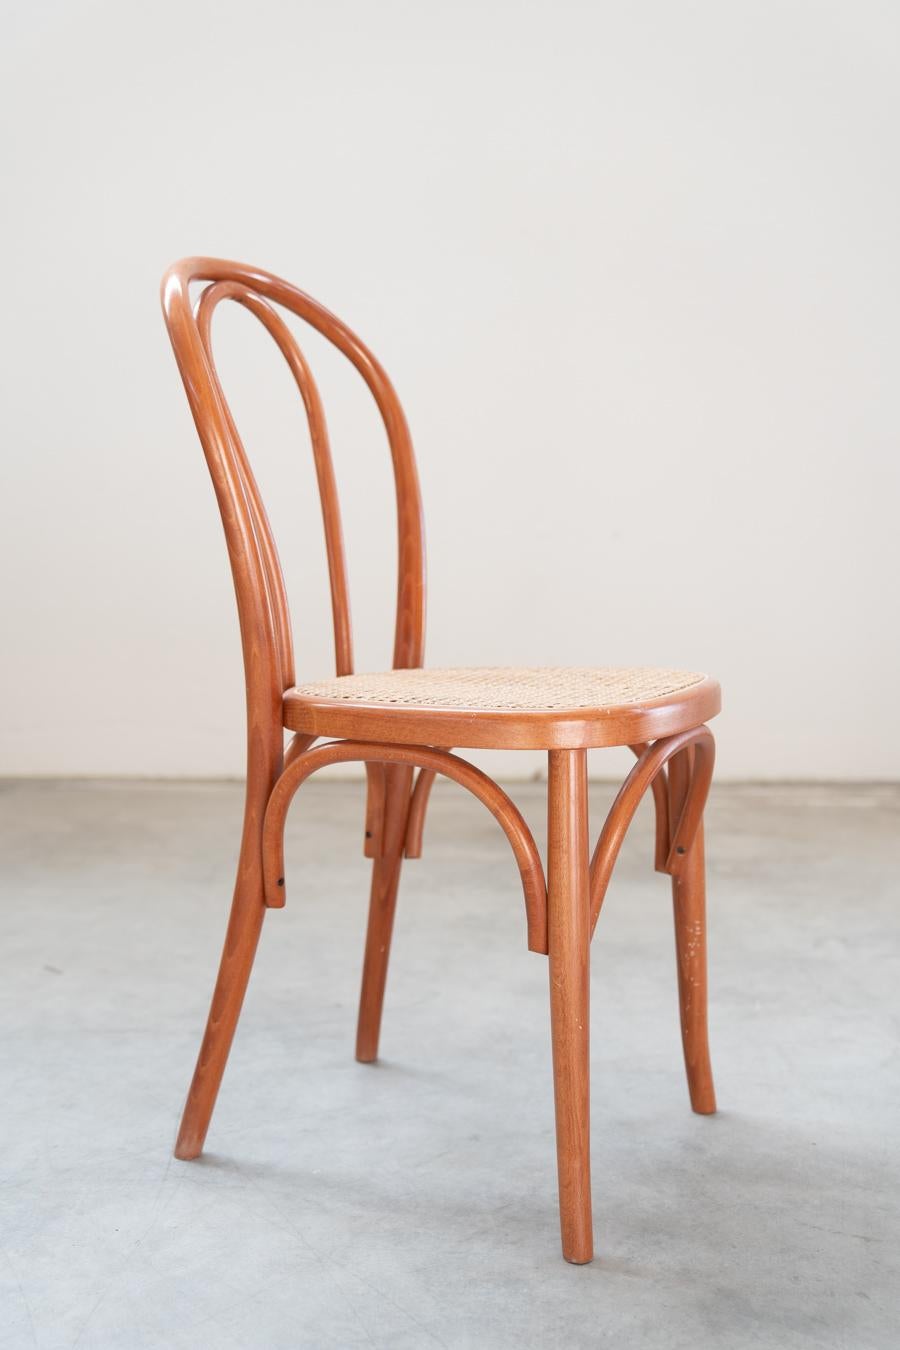 Sedie stile Thonet, in legno di faggio curvato e seduta in paglia, nr 34 totale For Sale 4